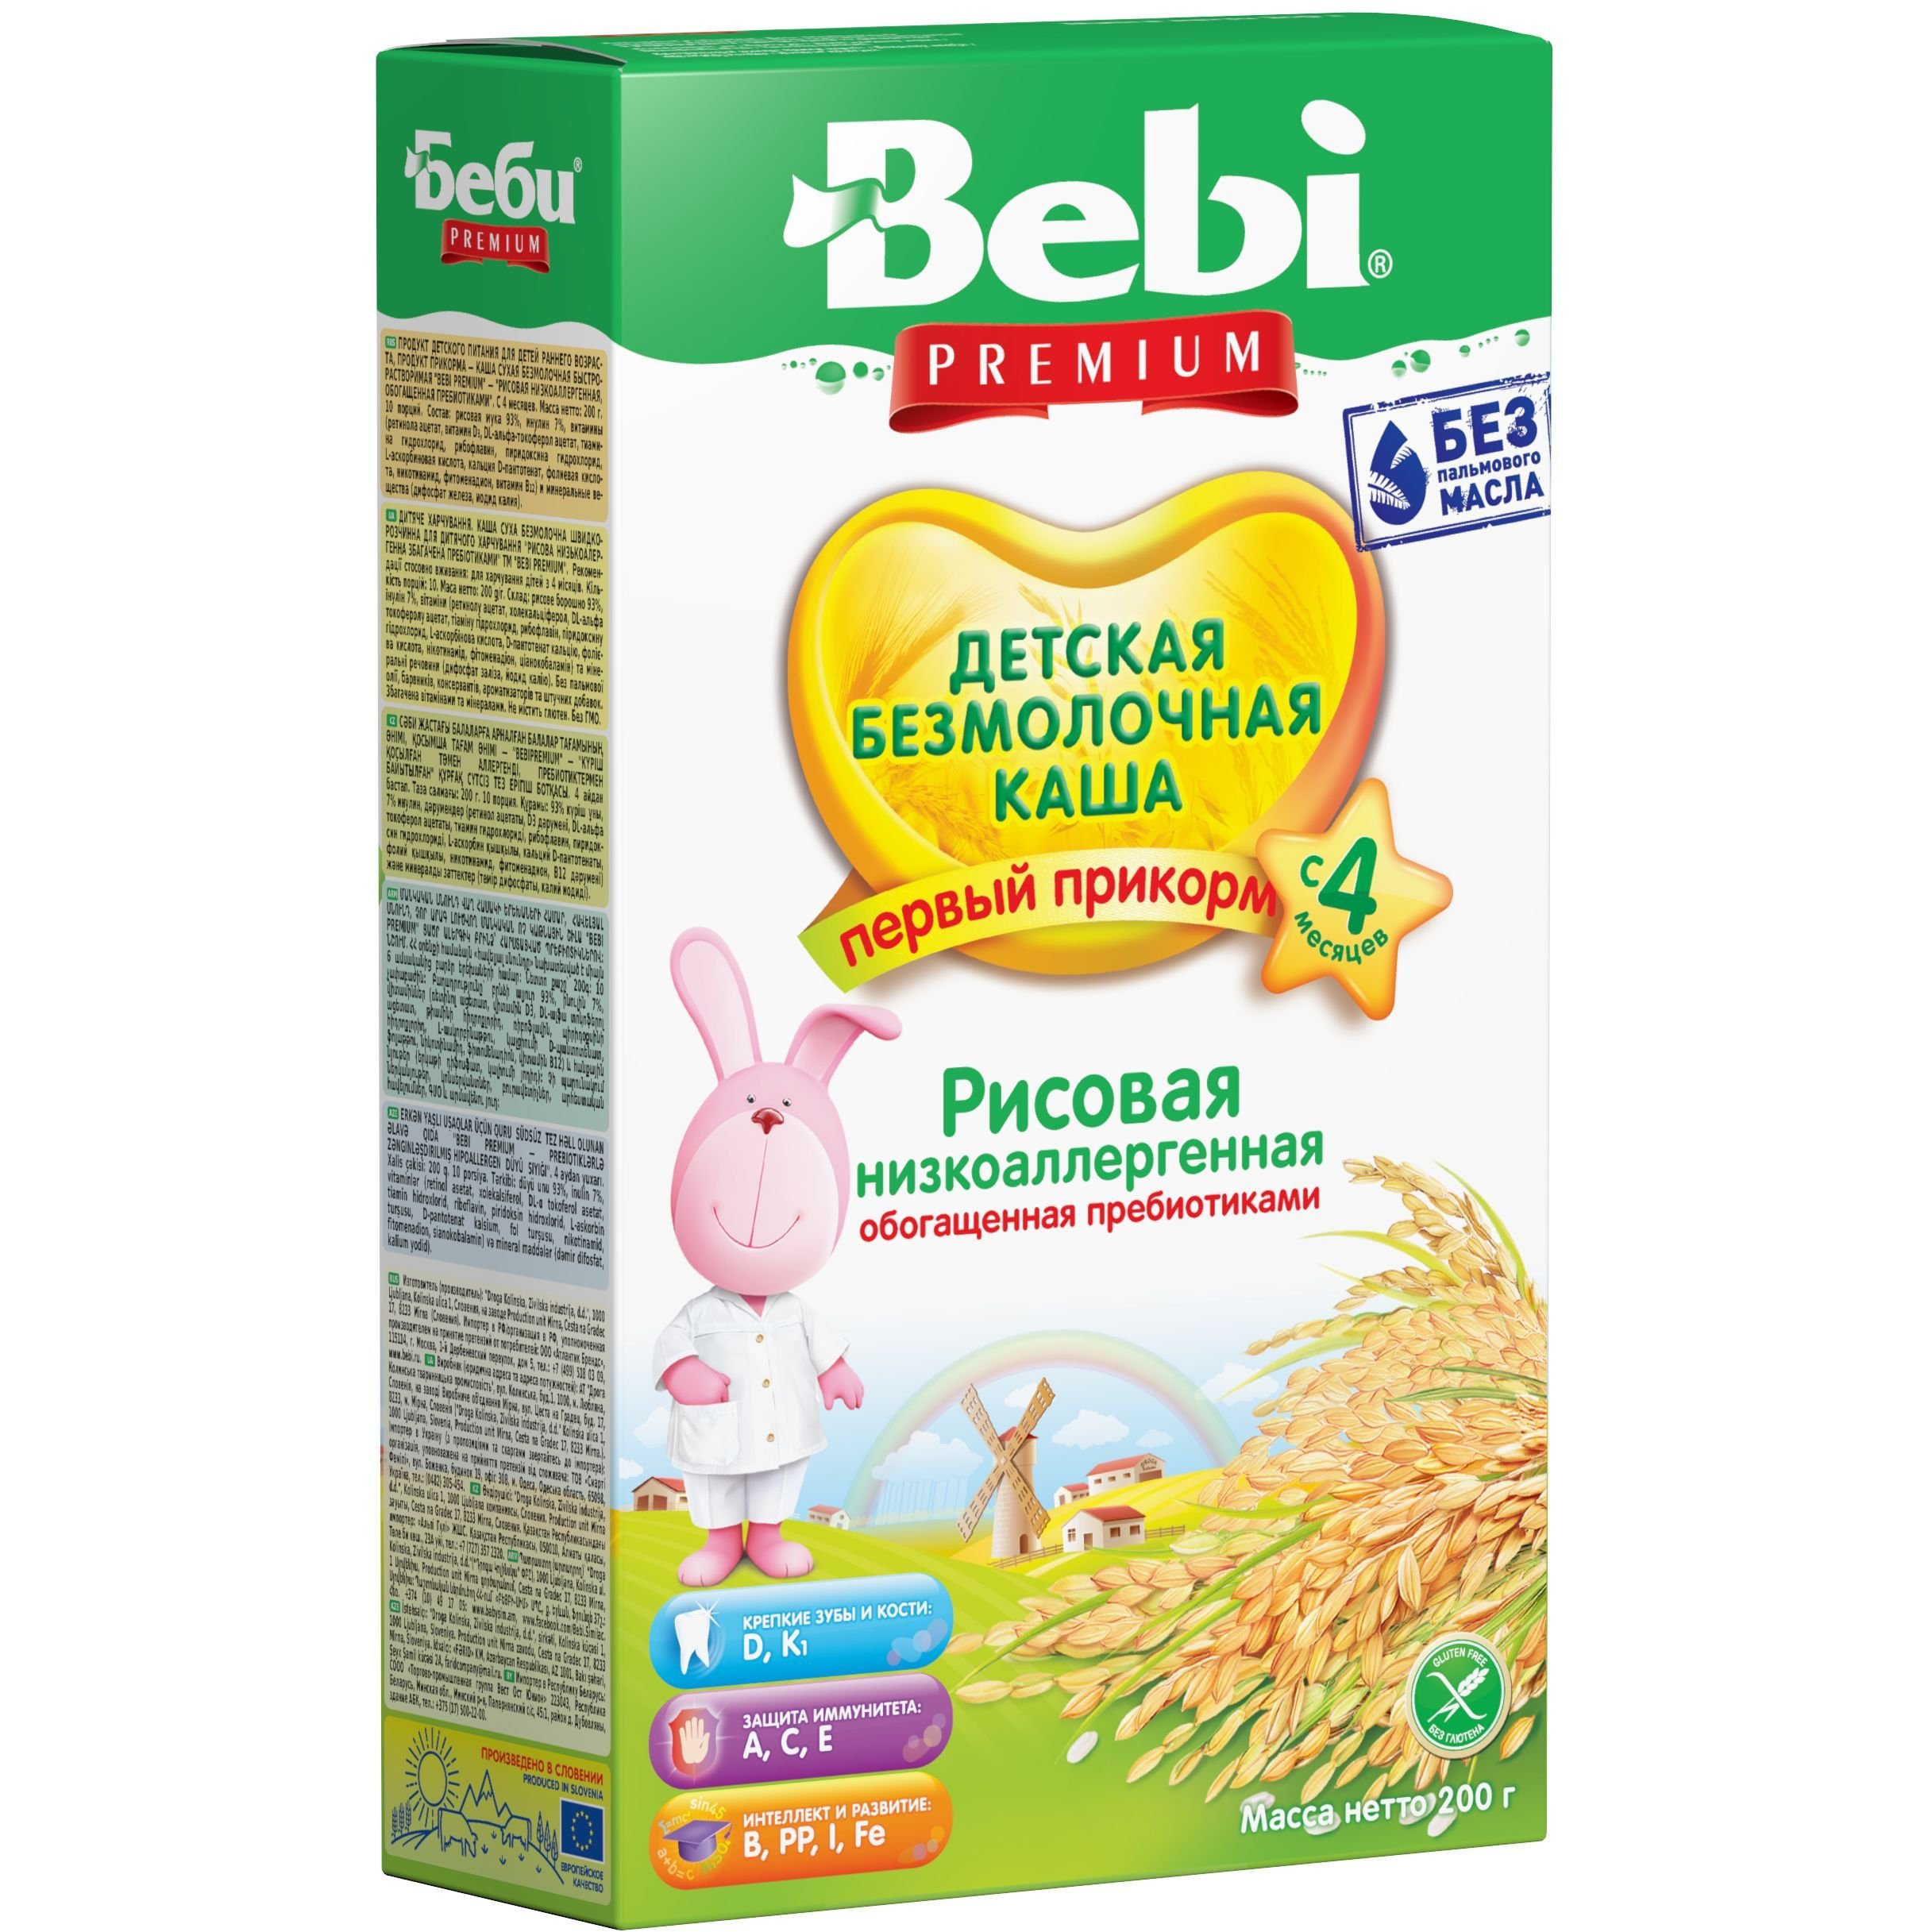 Безмолочна низькоалергенна каша Bebi Premium Рисова з пребіотиками 200 г - фото 1